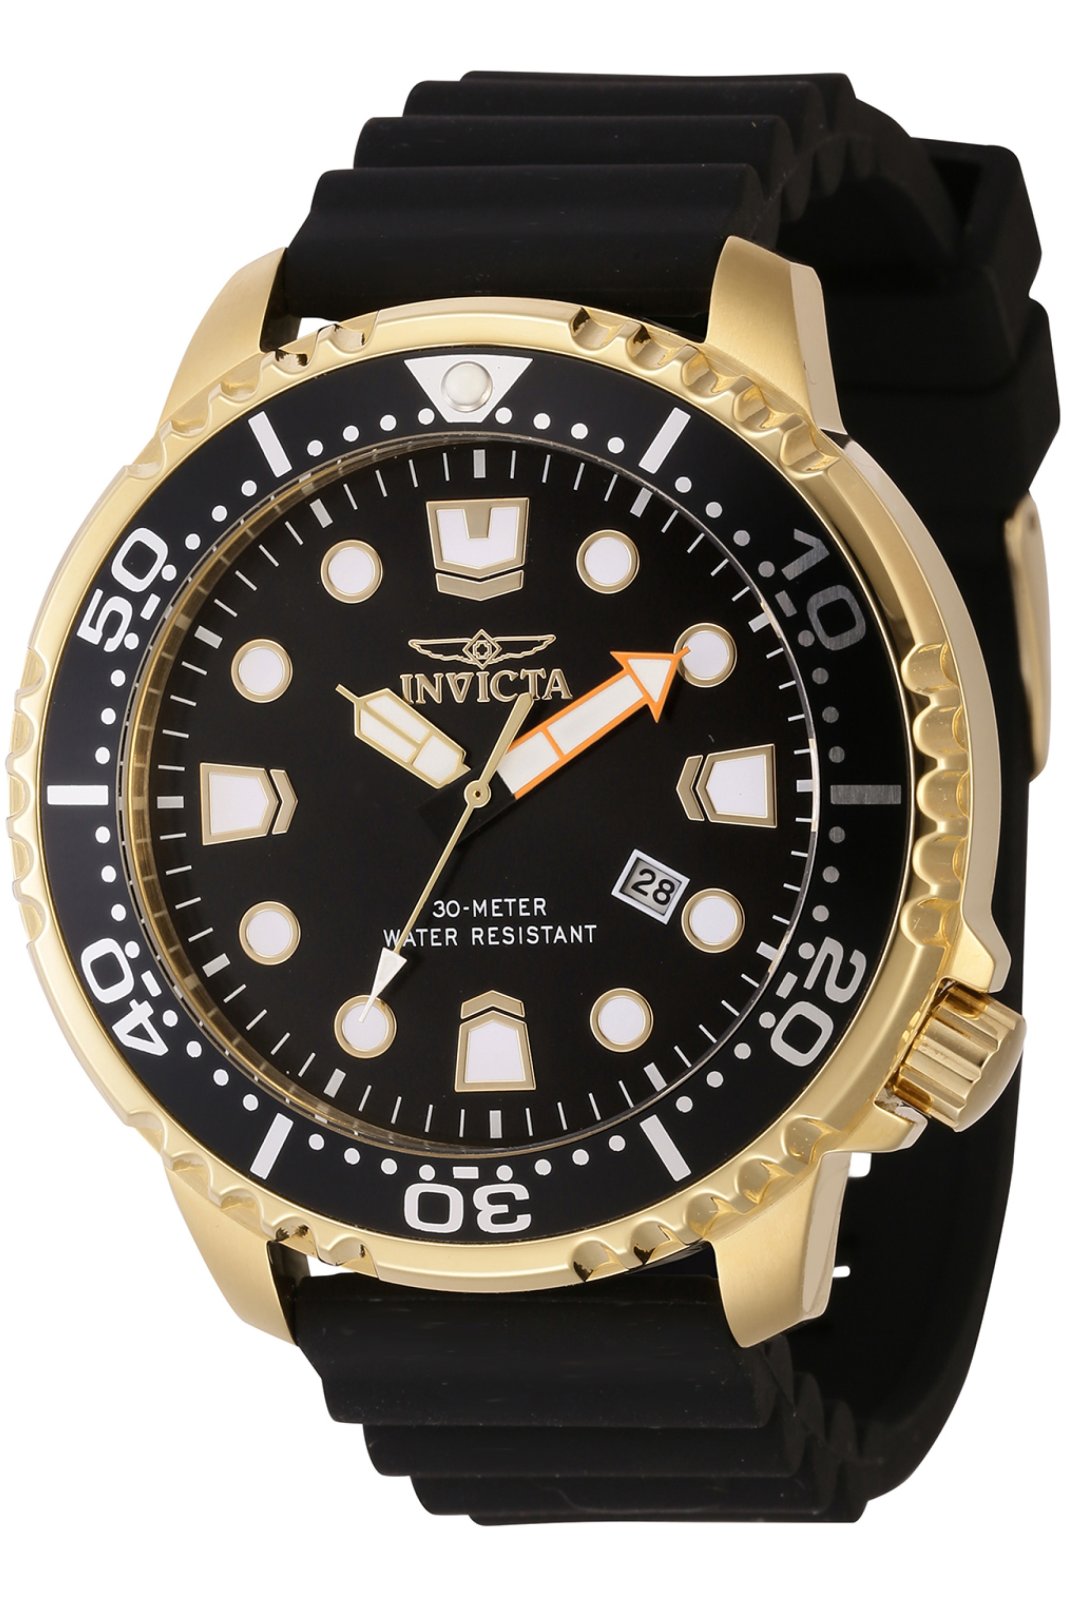 Invicta Pro Diver 44833 Men's Quartz Watch - 48mm